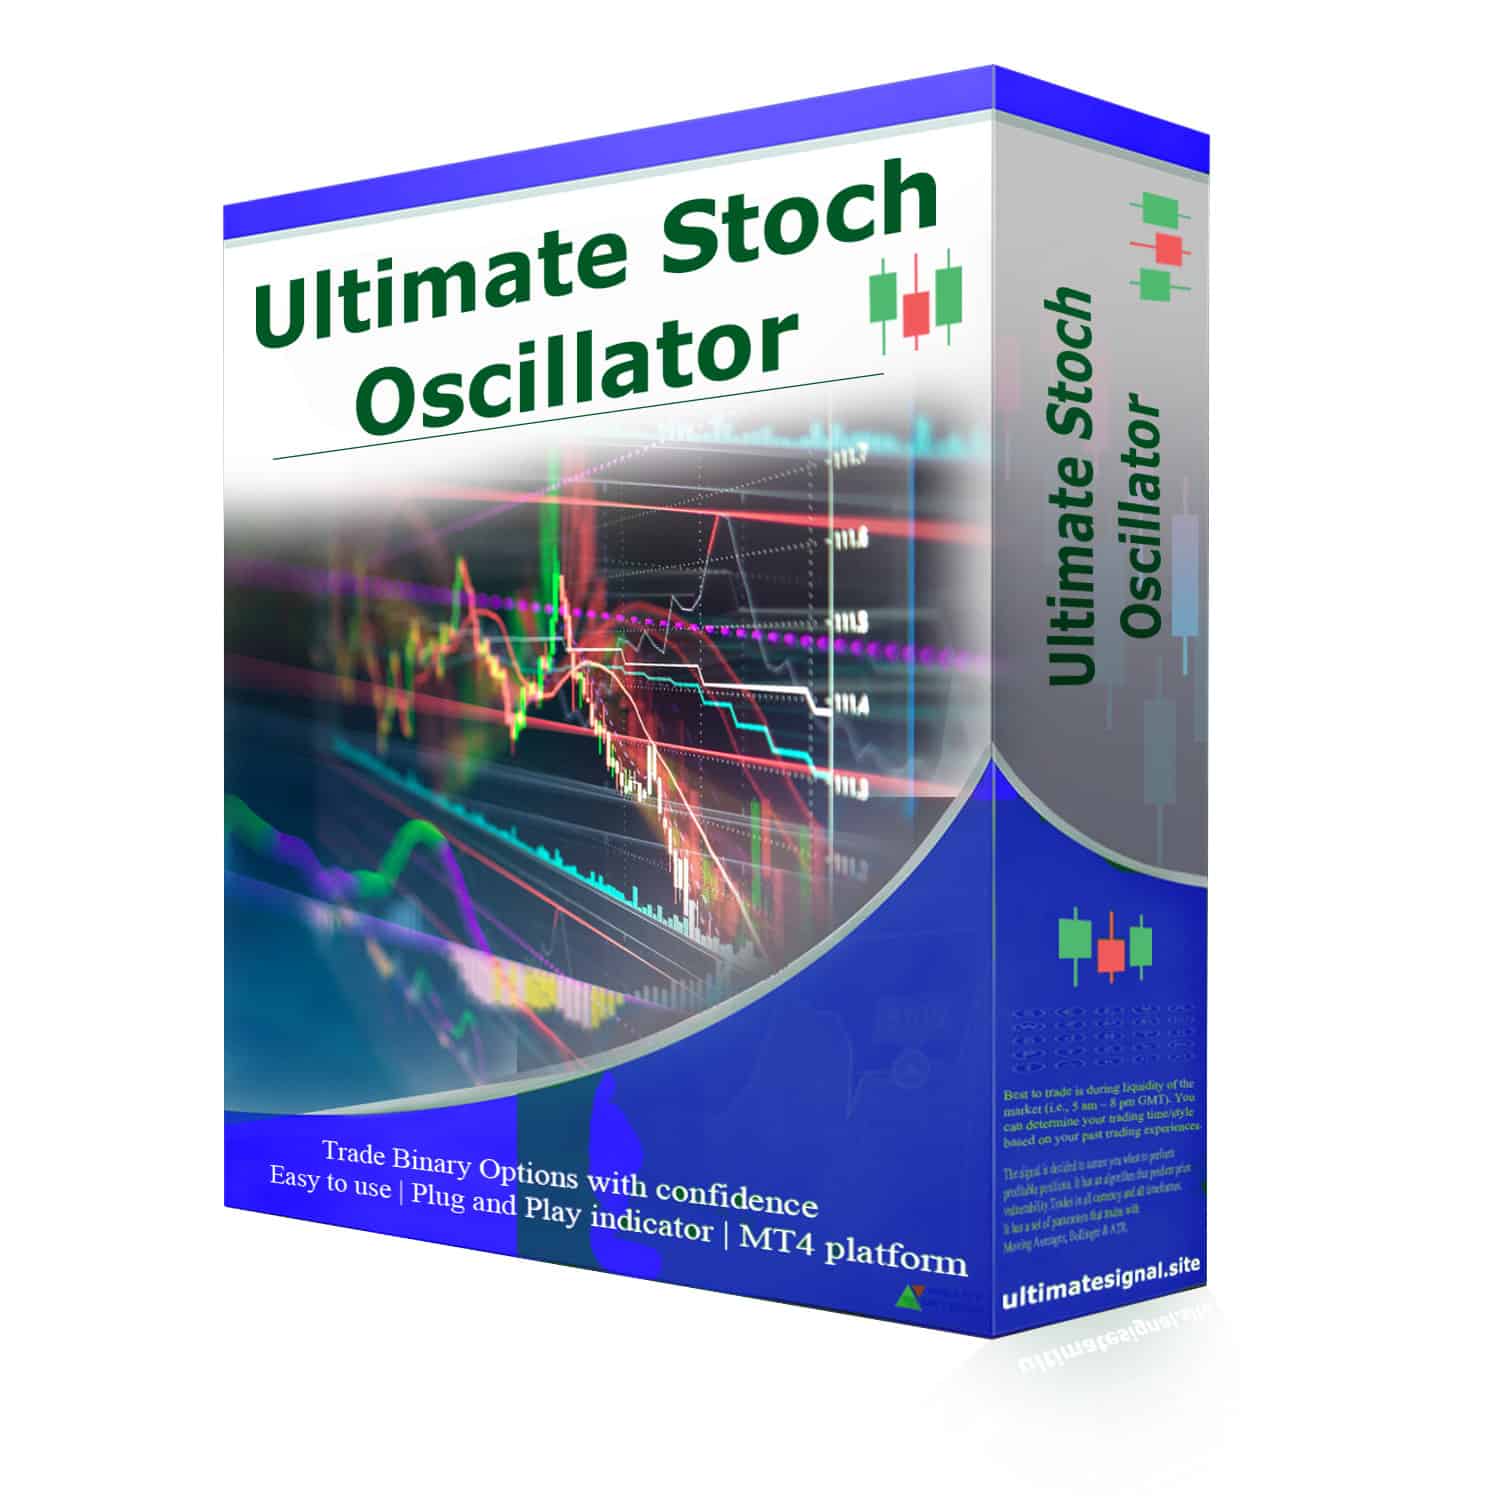 Ultimate Stoch Oscillator